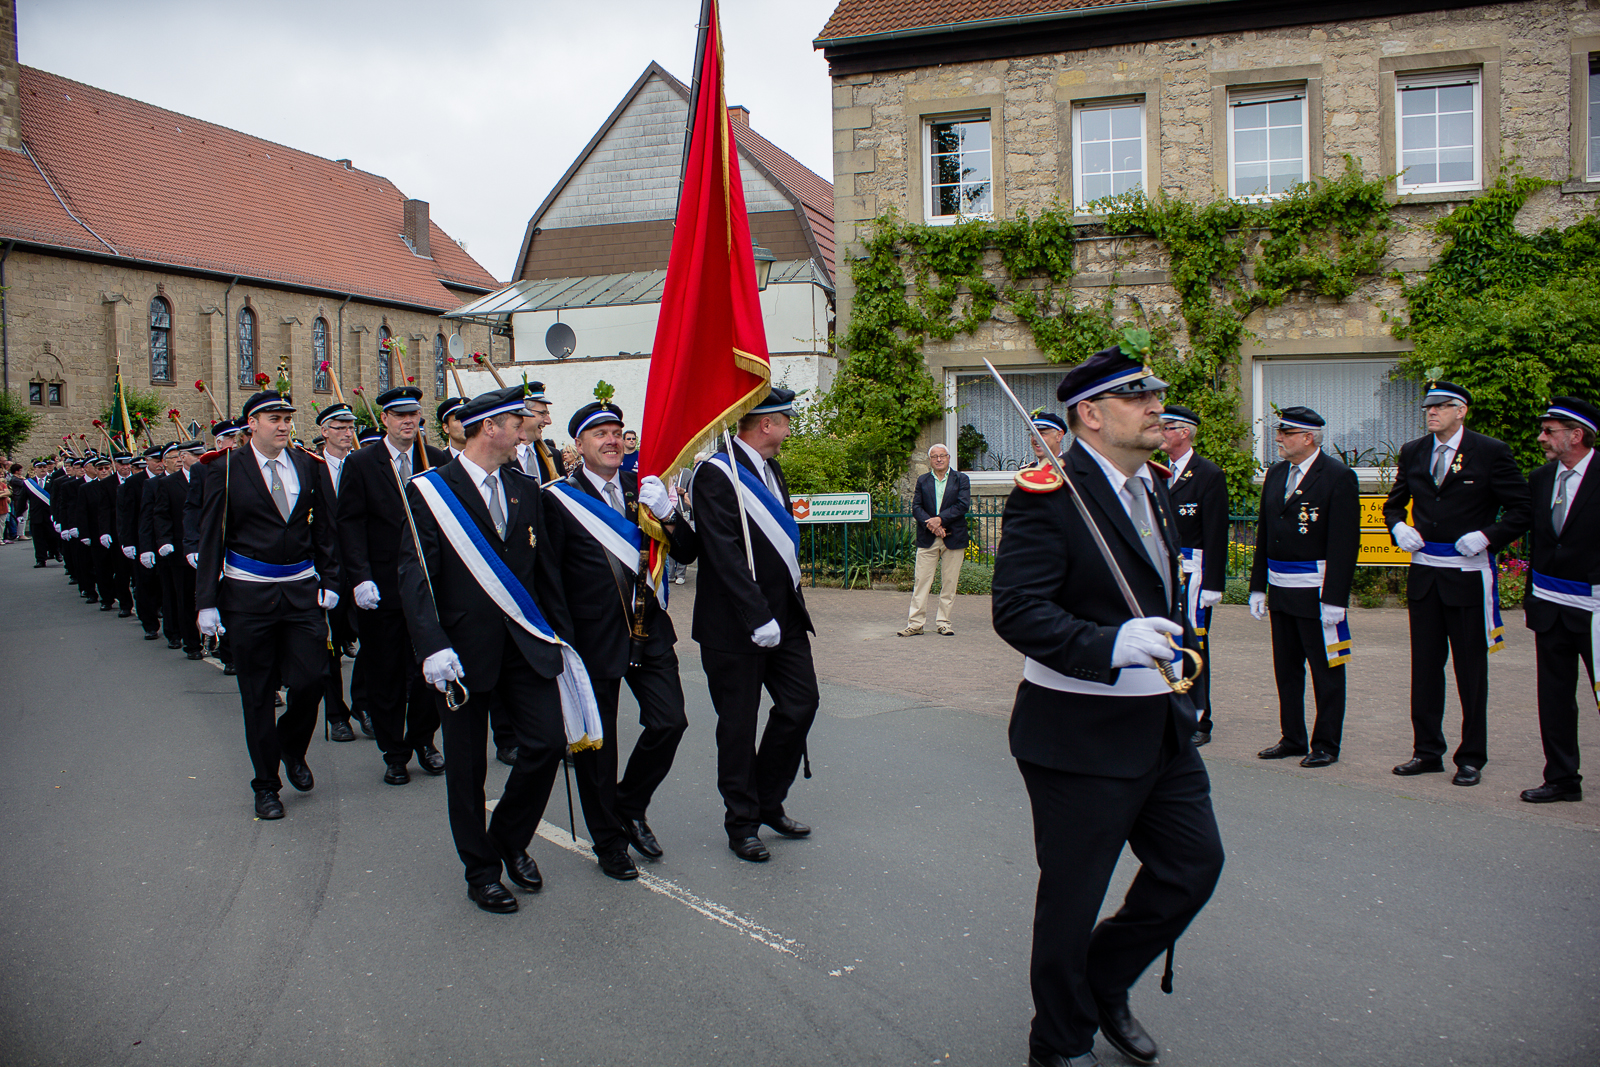 Mitglieder des Schützenvereins Nörde marschieren durch das Dorf.